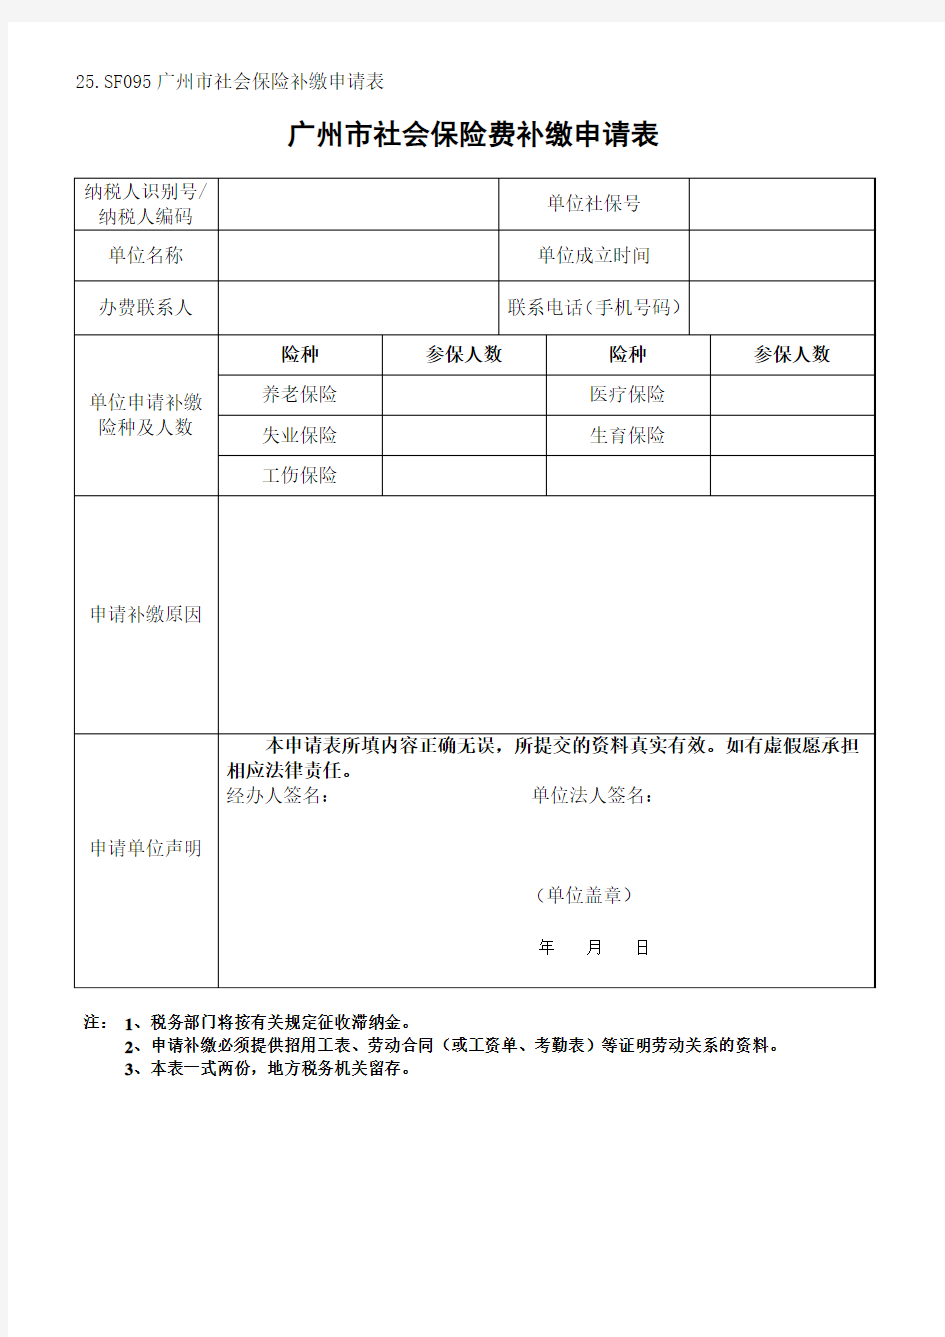 《广州市社会保险费补缴申请表》2016